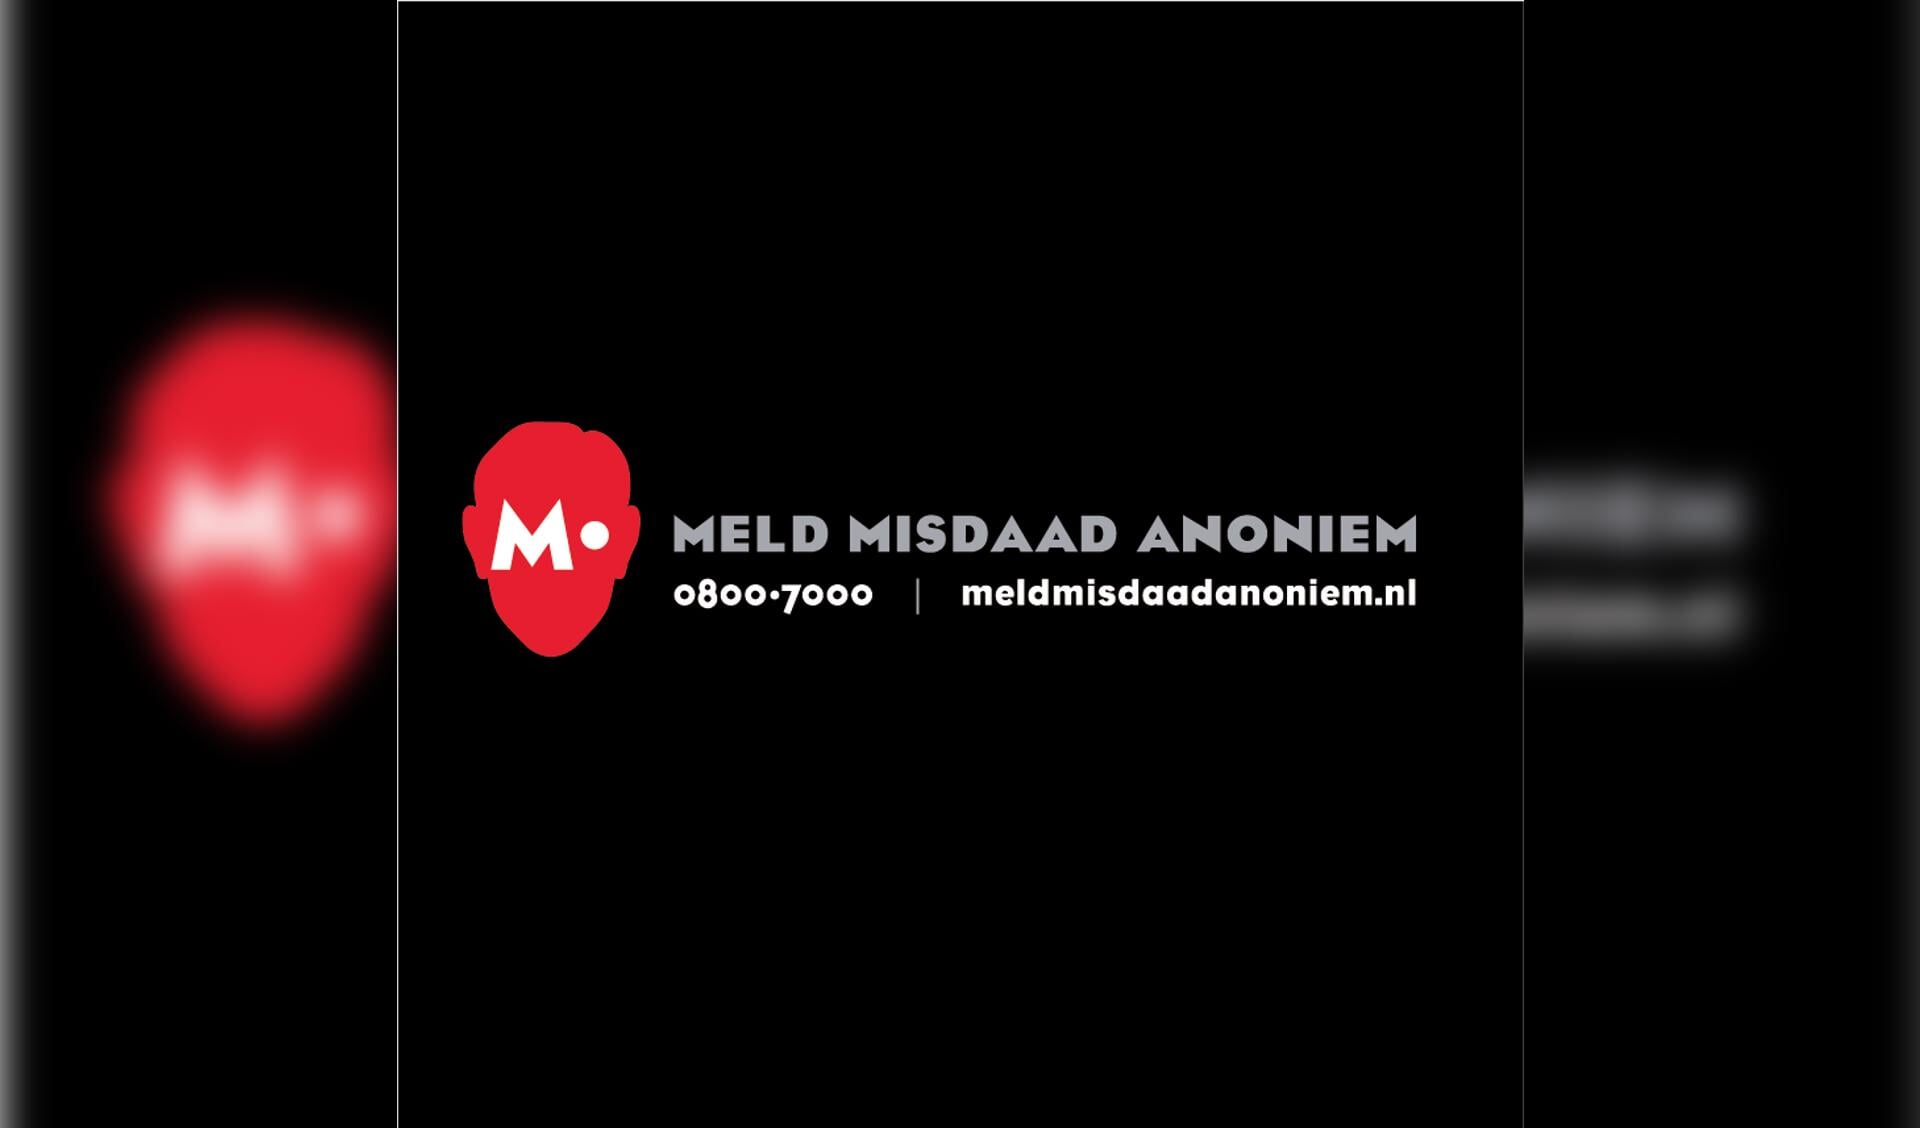 Meld signalen van crimineel misbruik anoniem via M. Bel 0800-7000 of ga naar www.meldmisdaadanoniem.nl